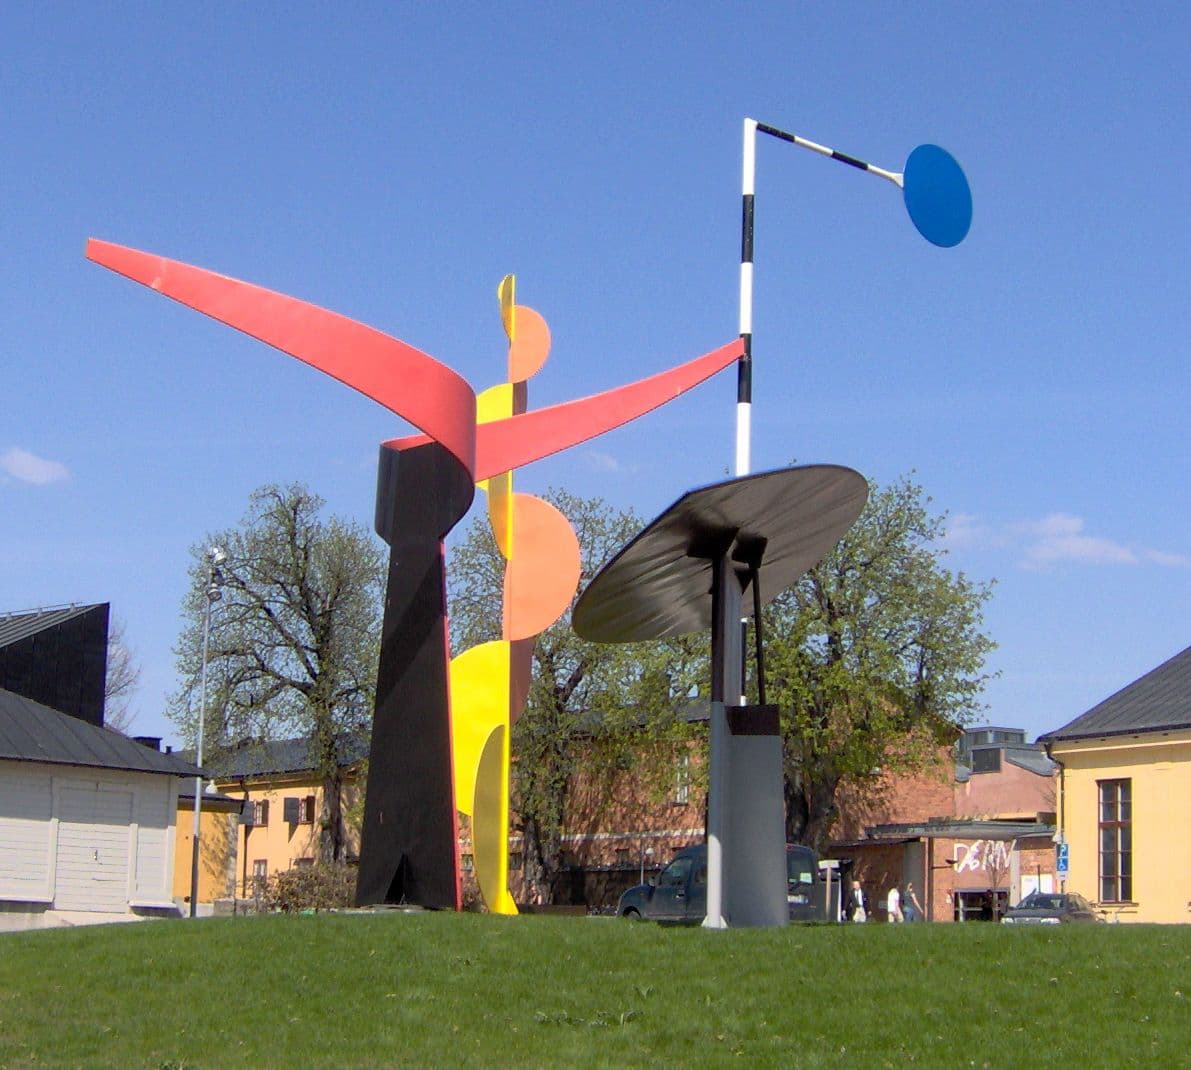 Feige. 3 - Alexander Calder, Die vier Elemente, Außenbereich des Stockholm Museum of Modern Art, Schweden, 2006. Fotos: Kein maschinenlesbarer Autor angegeben. Kalle1~commonswiki angenommen (basierend auf Urheberrechtsansprüchen)., Gemeinfrei, über Wikimedia Commons.